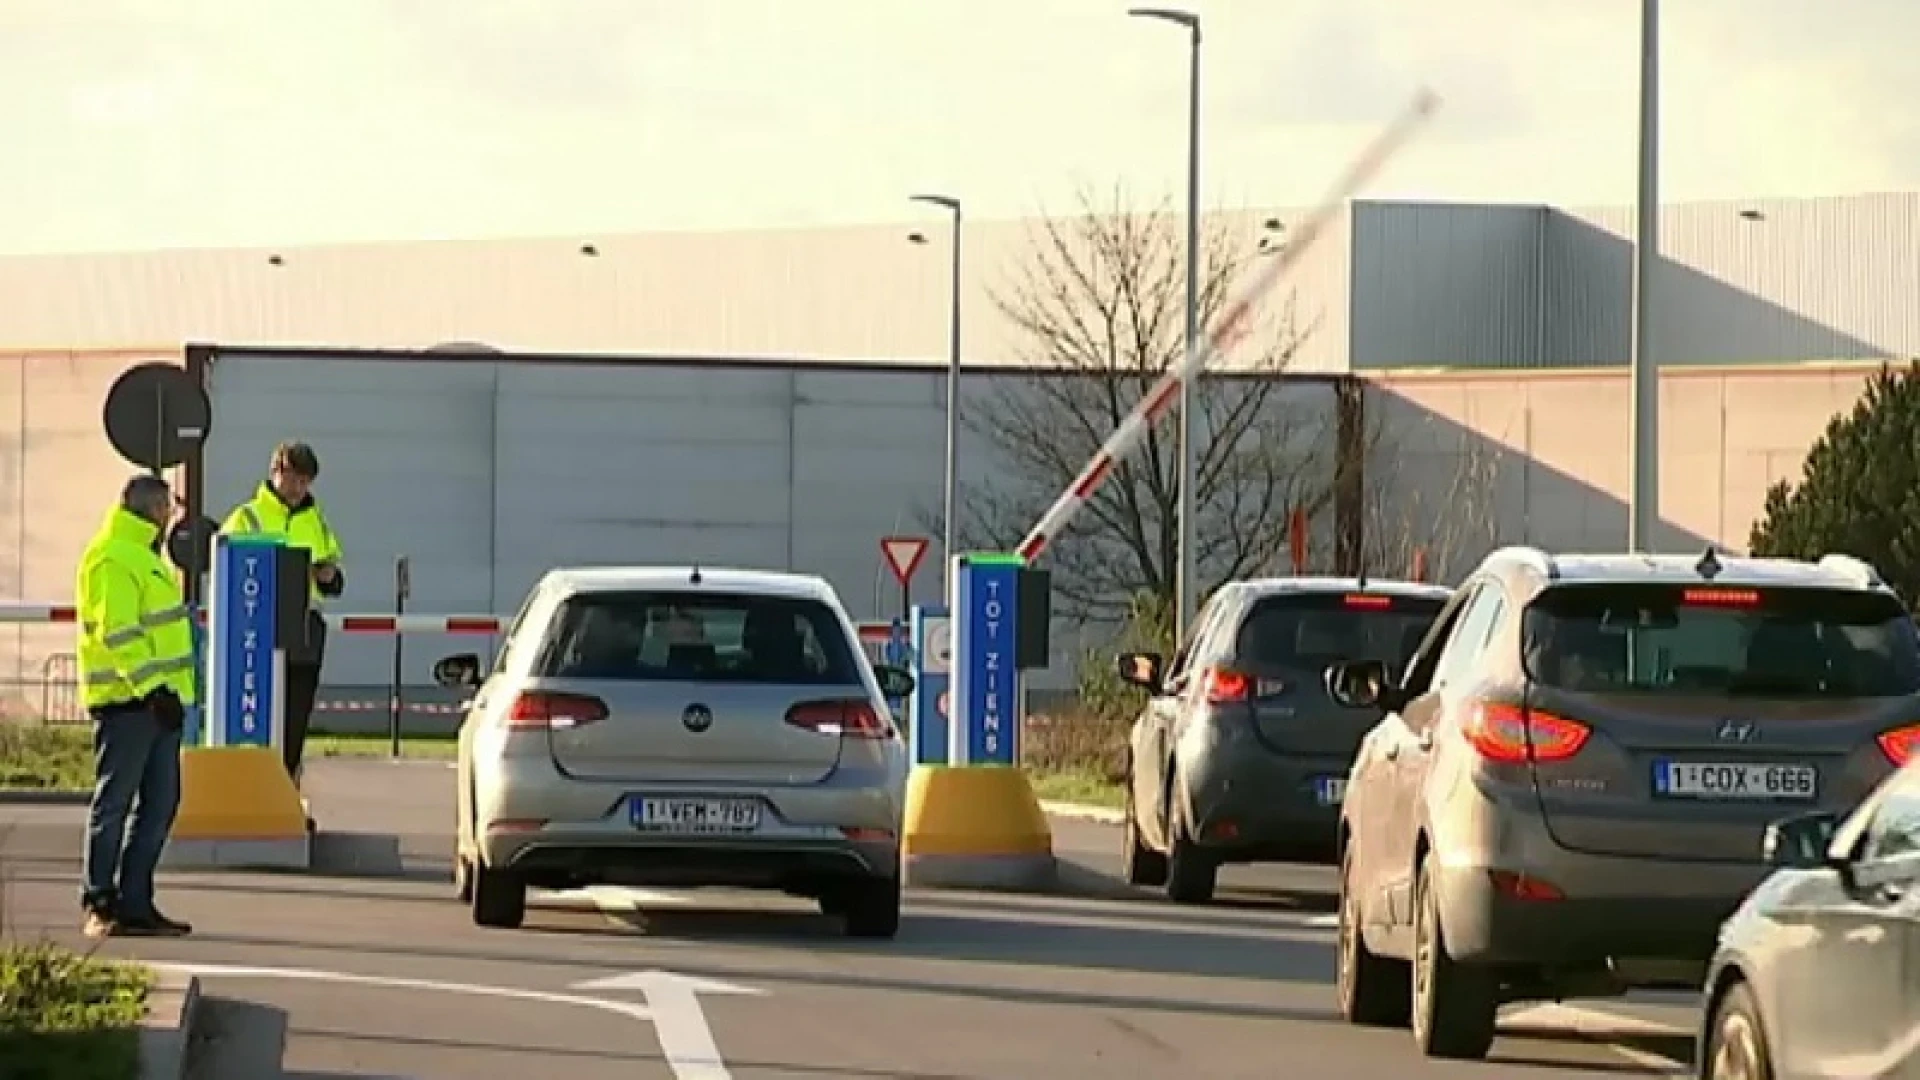 Treinreizigers staan voor verrassing aan betalende NMBS-parking in Aarschot: "Ik wist niet dat het vandaag ging doorgaan"